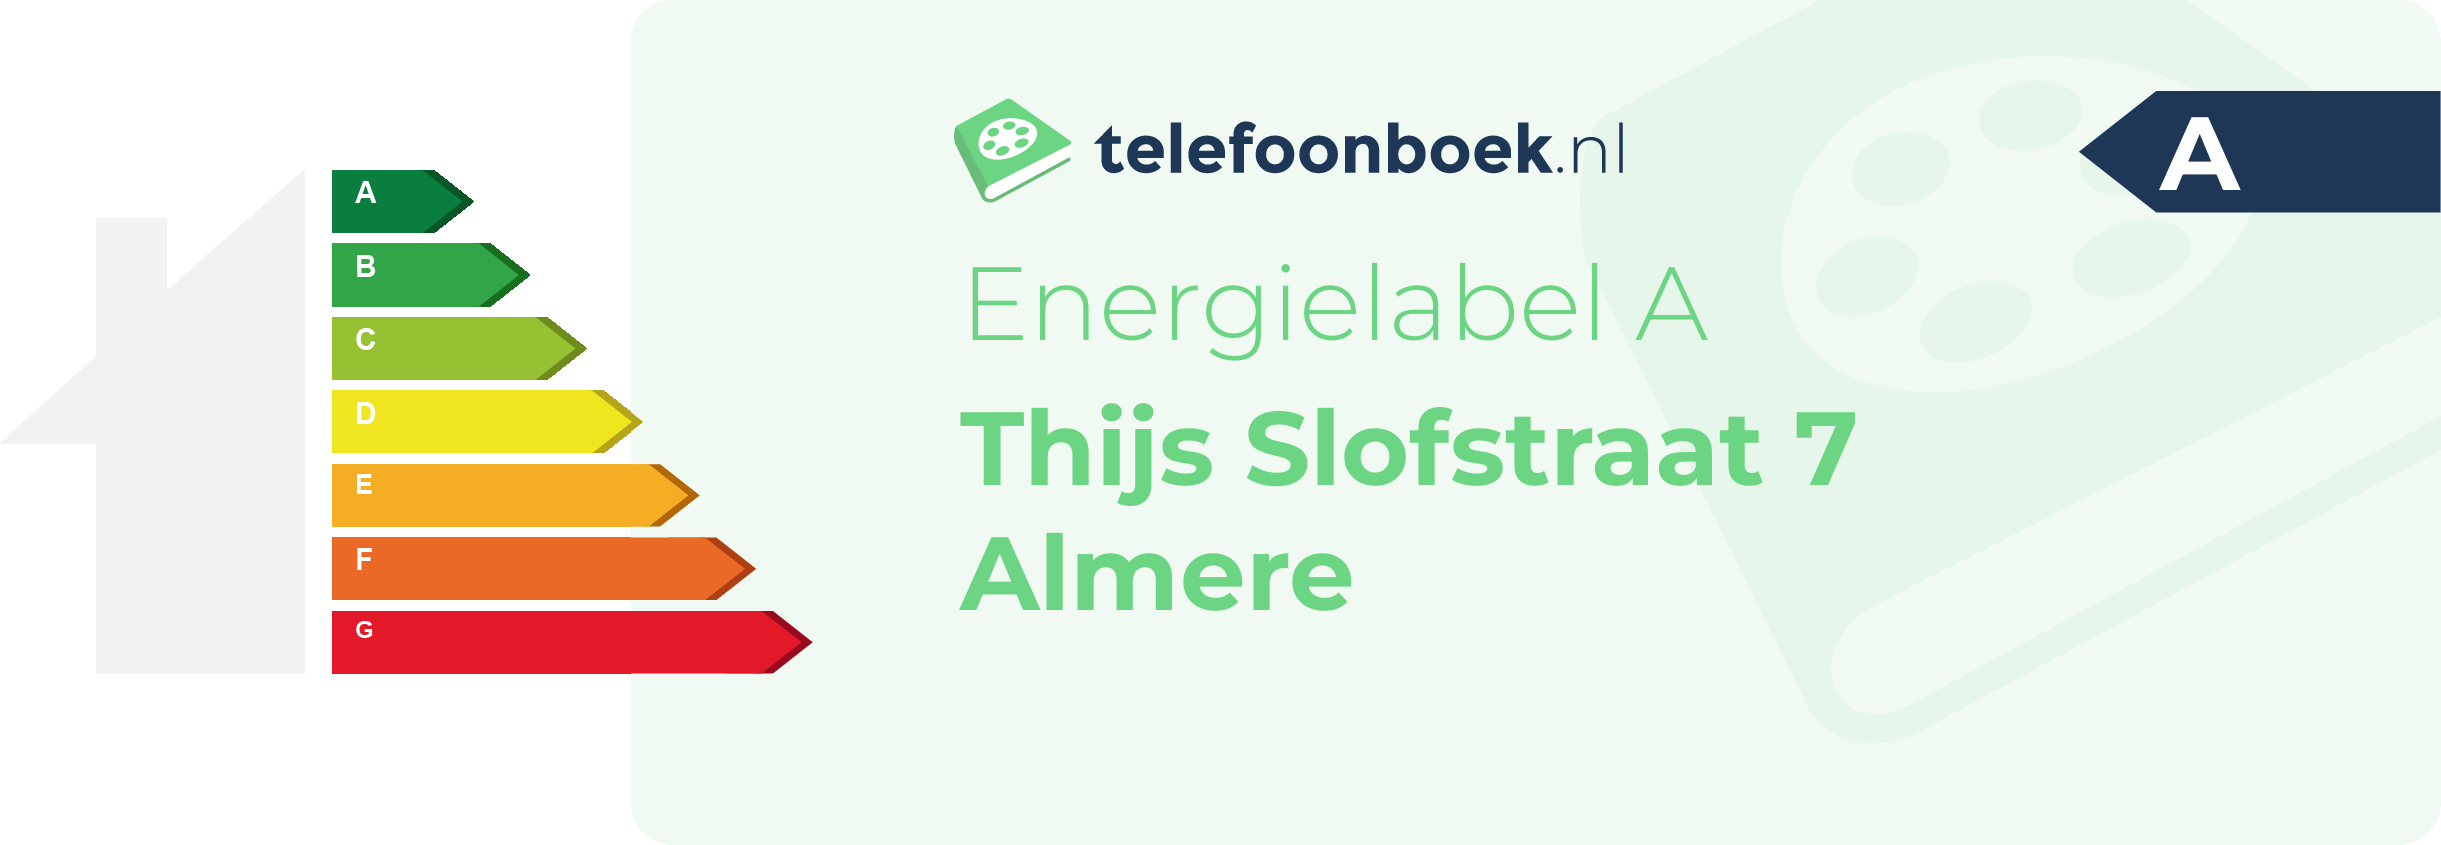 Energielabel Thijs Slofstraat 7 Almere